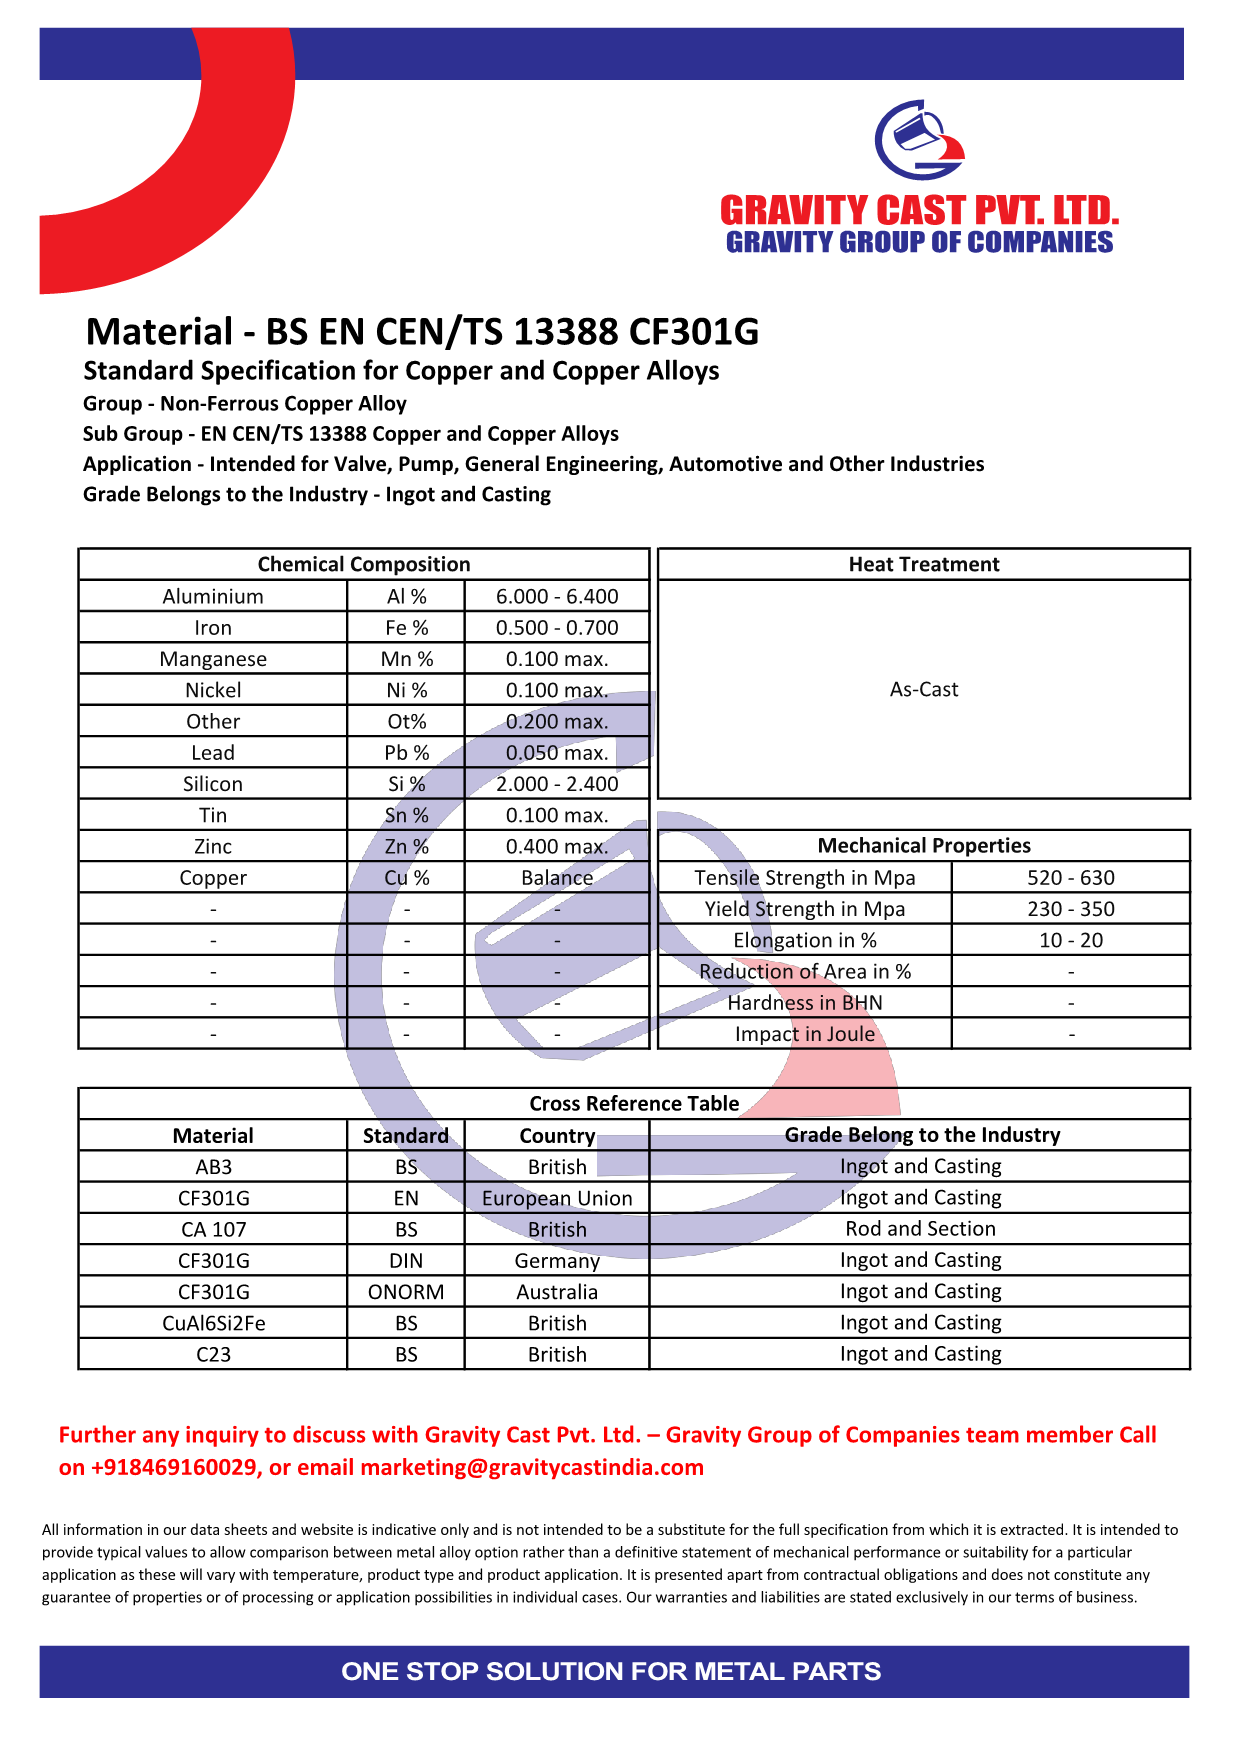 BS EN CEN TS 13388 CF301G.pdf